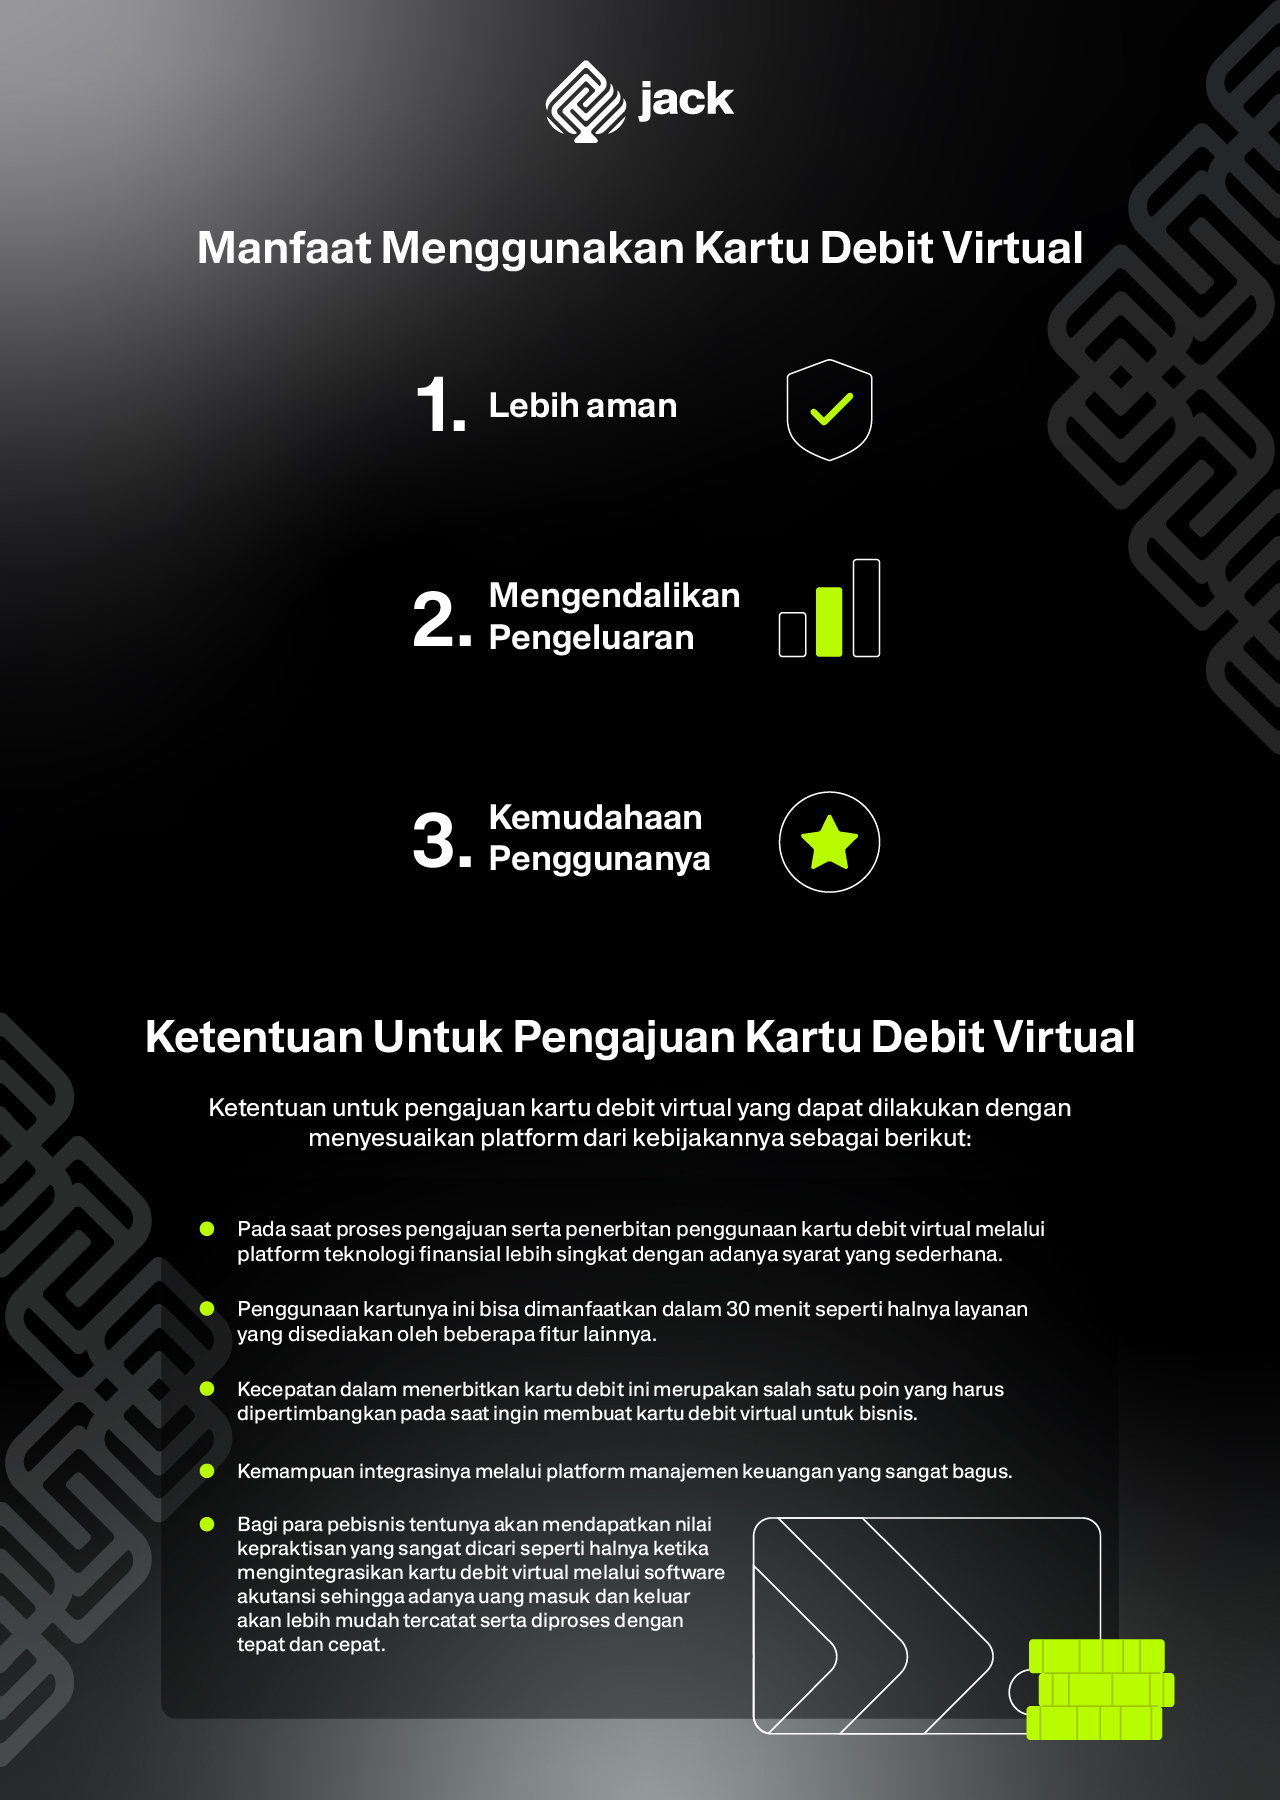 Infographic Cara Menggunakan Kartu Debit Virtual dan Ketentuan Untuk Pengajuan Kartu Debit Virtual Itsjack